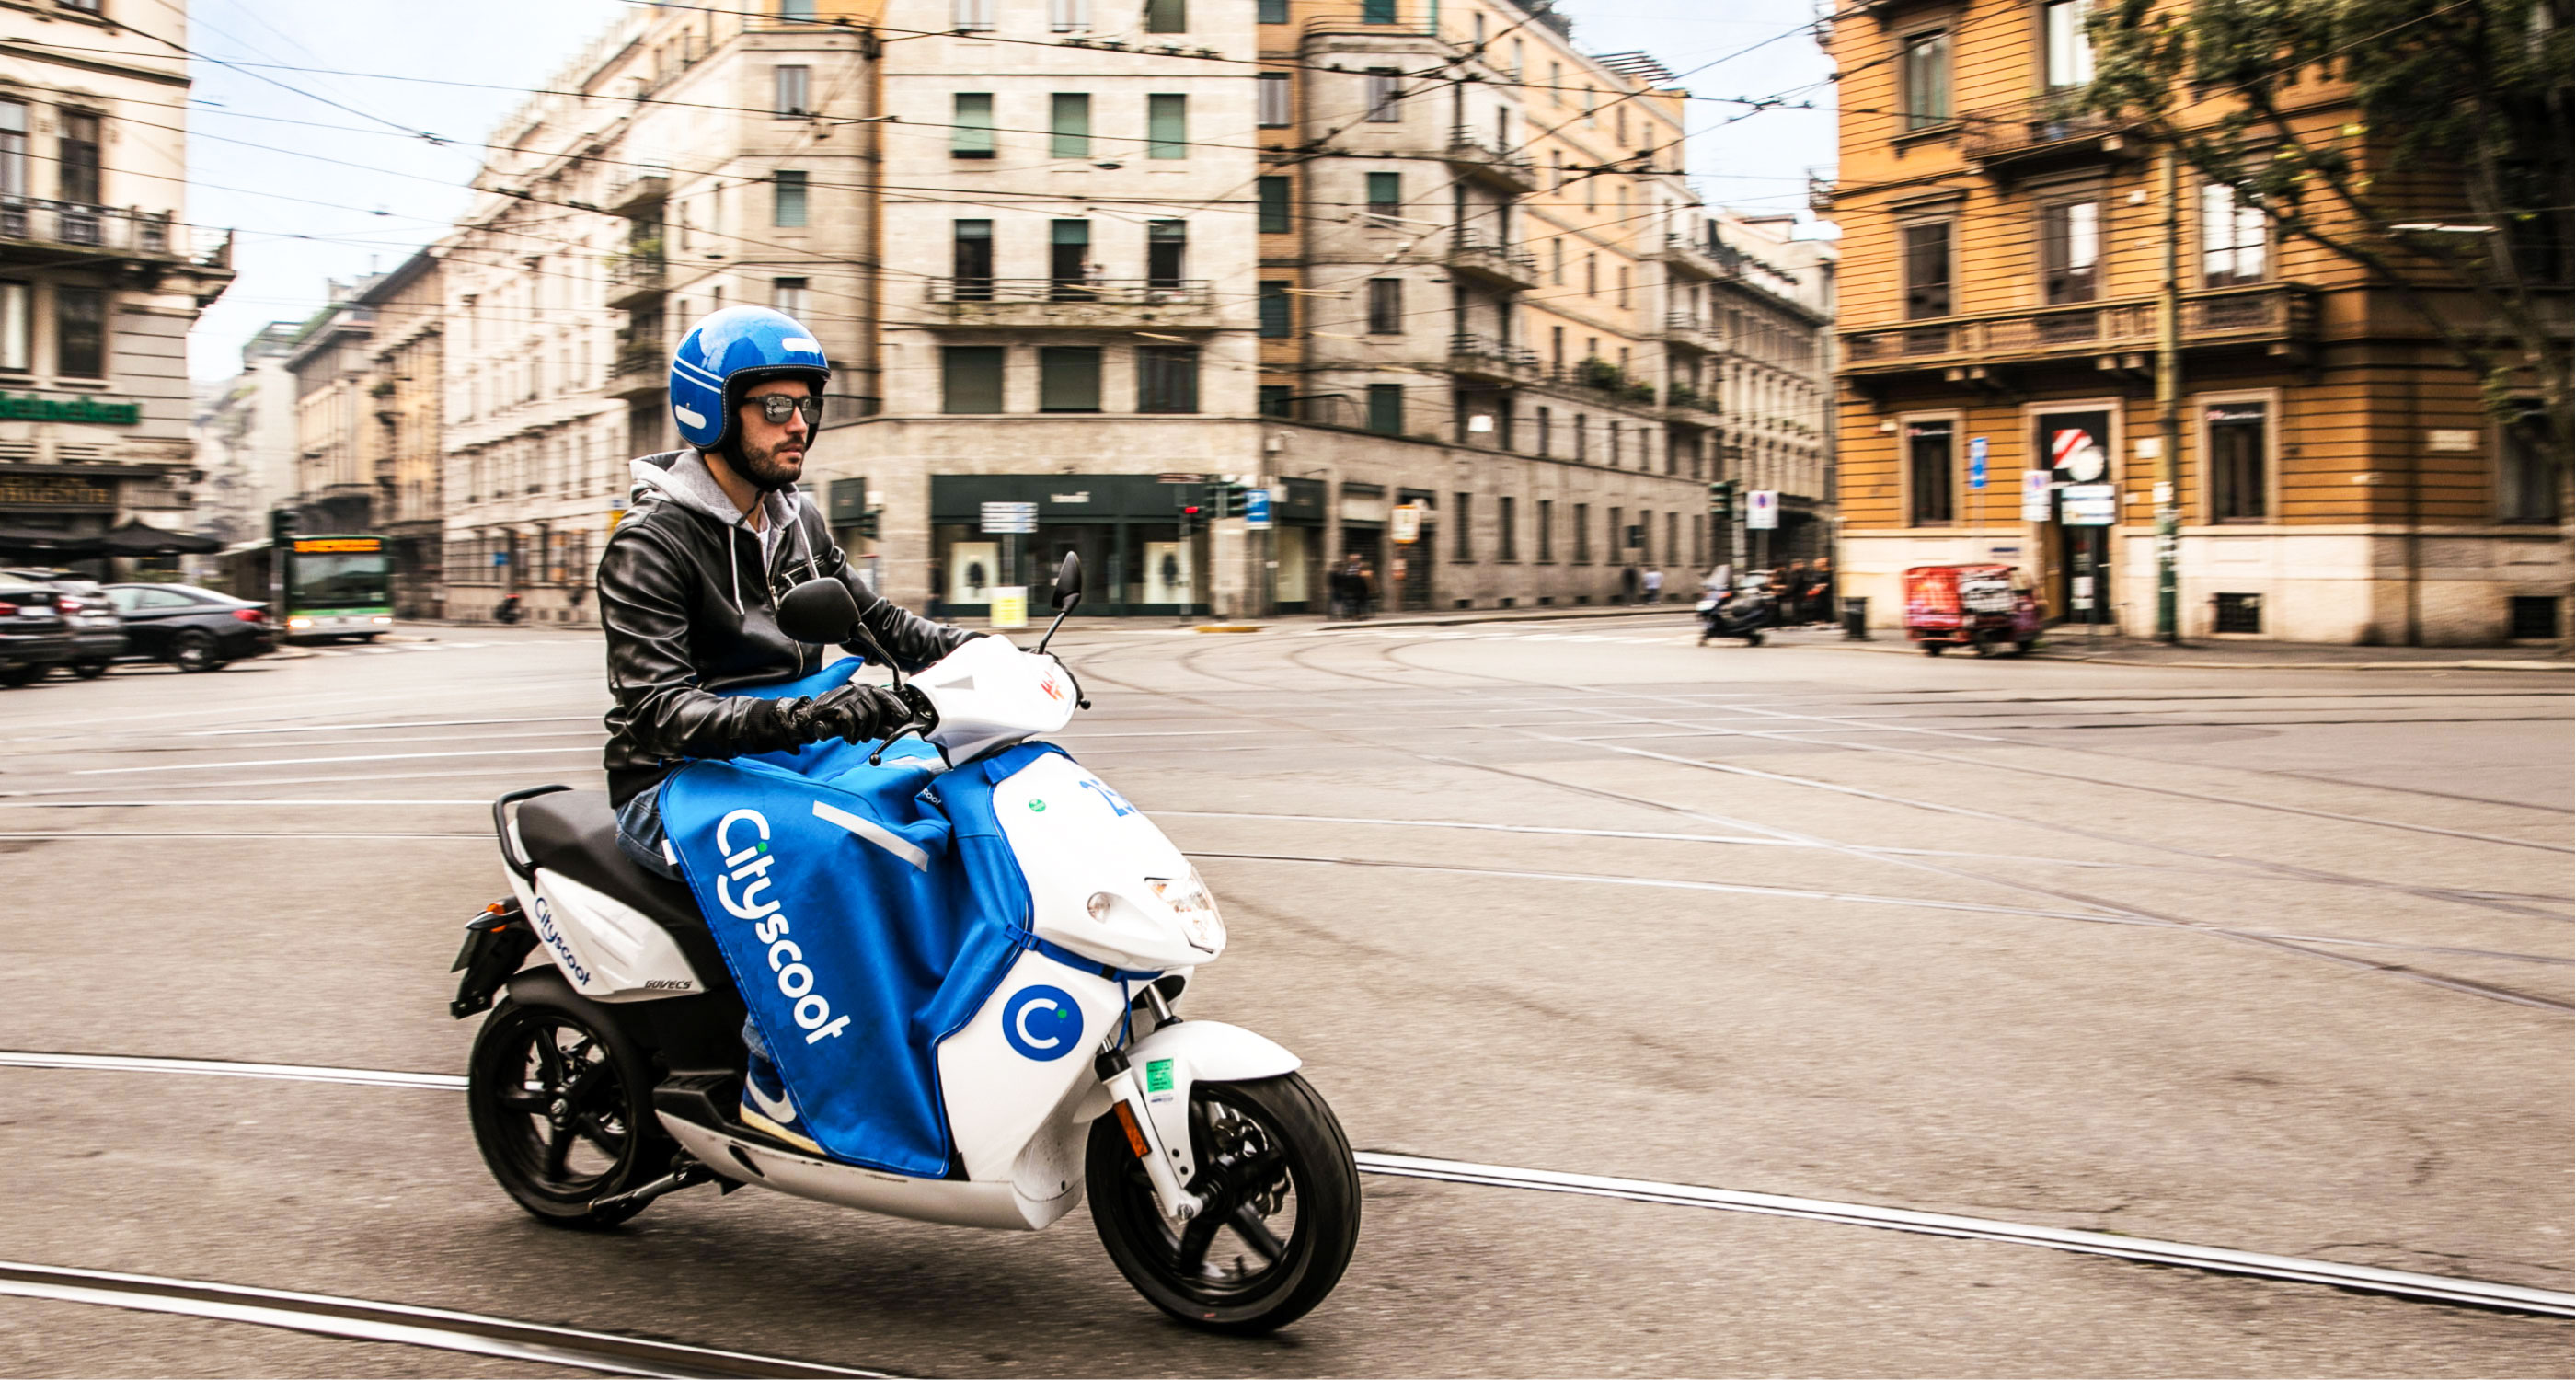 Les scooters Cityscoot disponibles dans l'app Uber